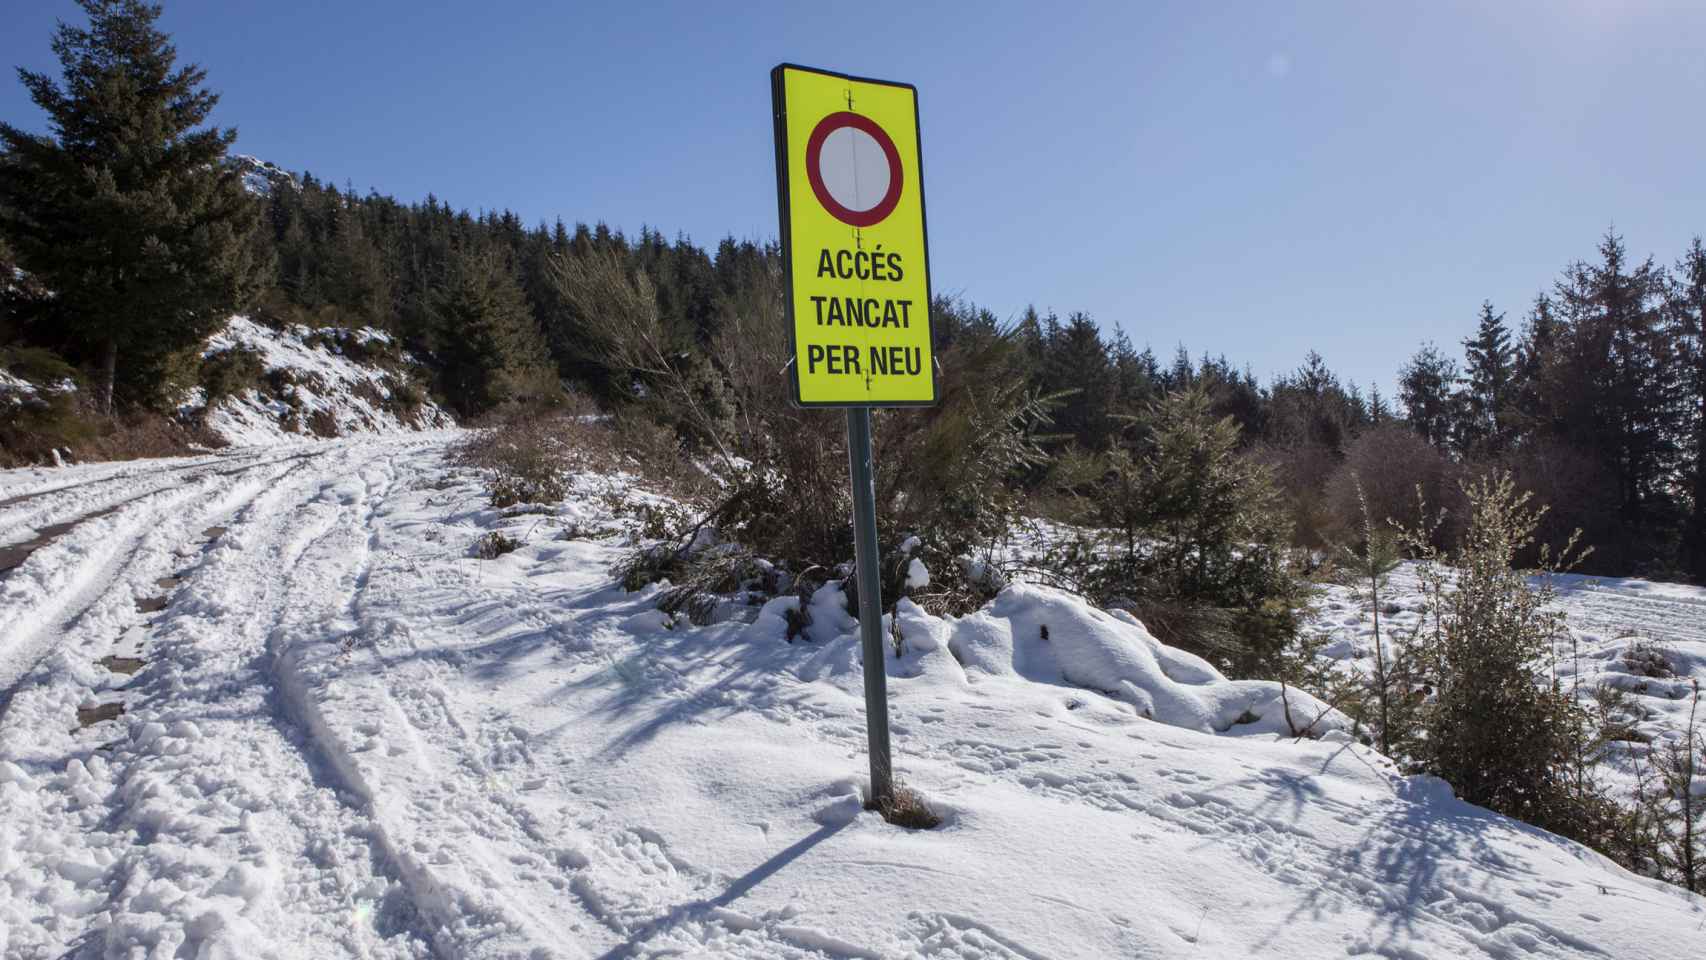 Una carretera catalana, cortada por la nevada en plena alerta por el frío en Cataluña / BOMBERS